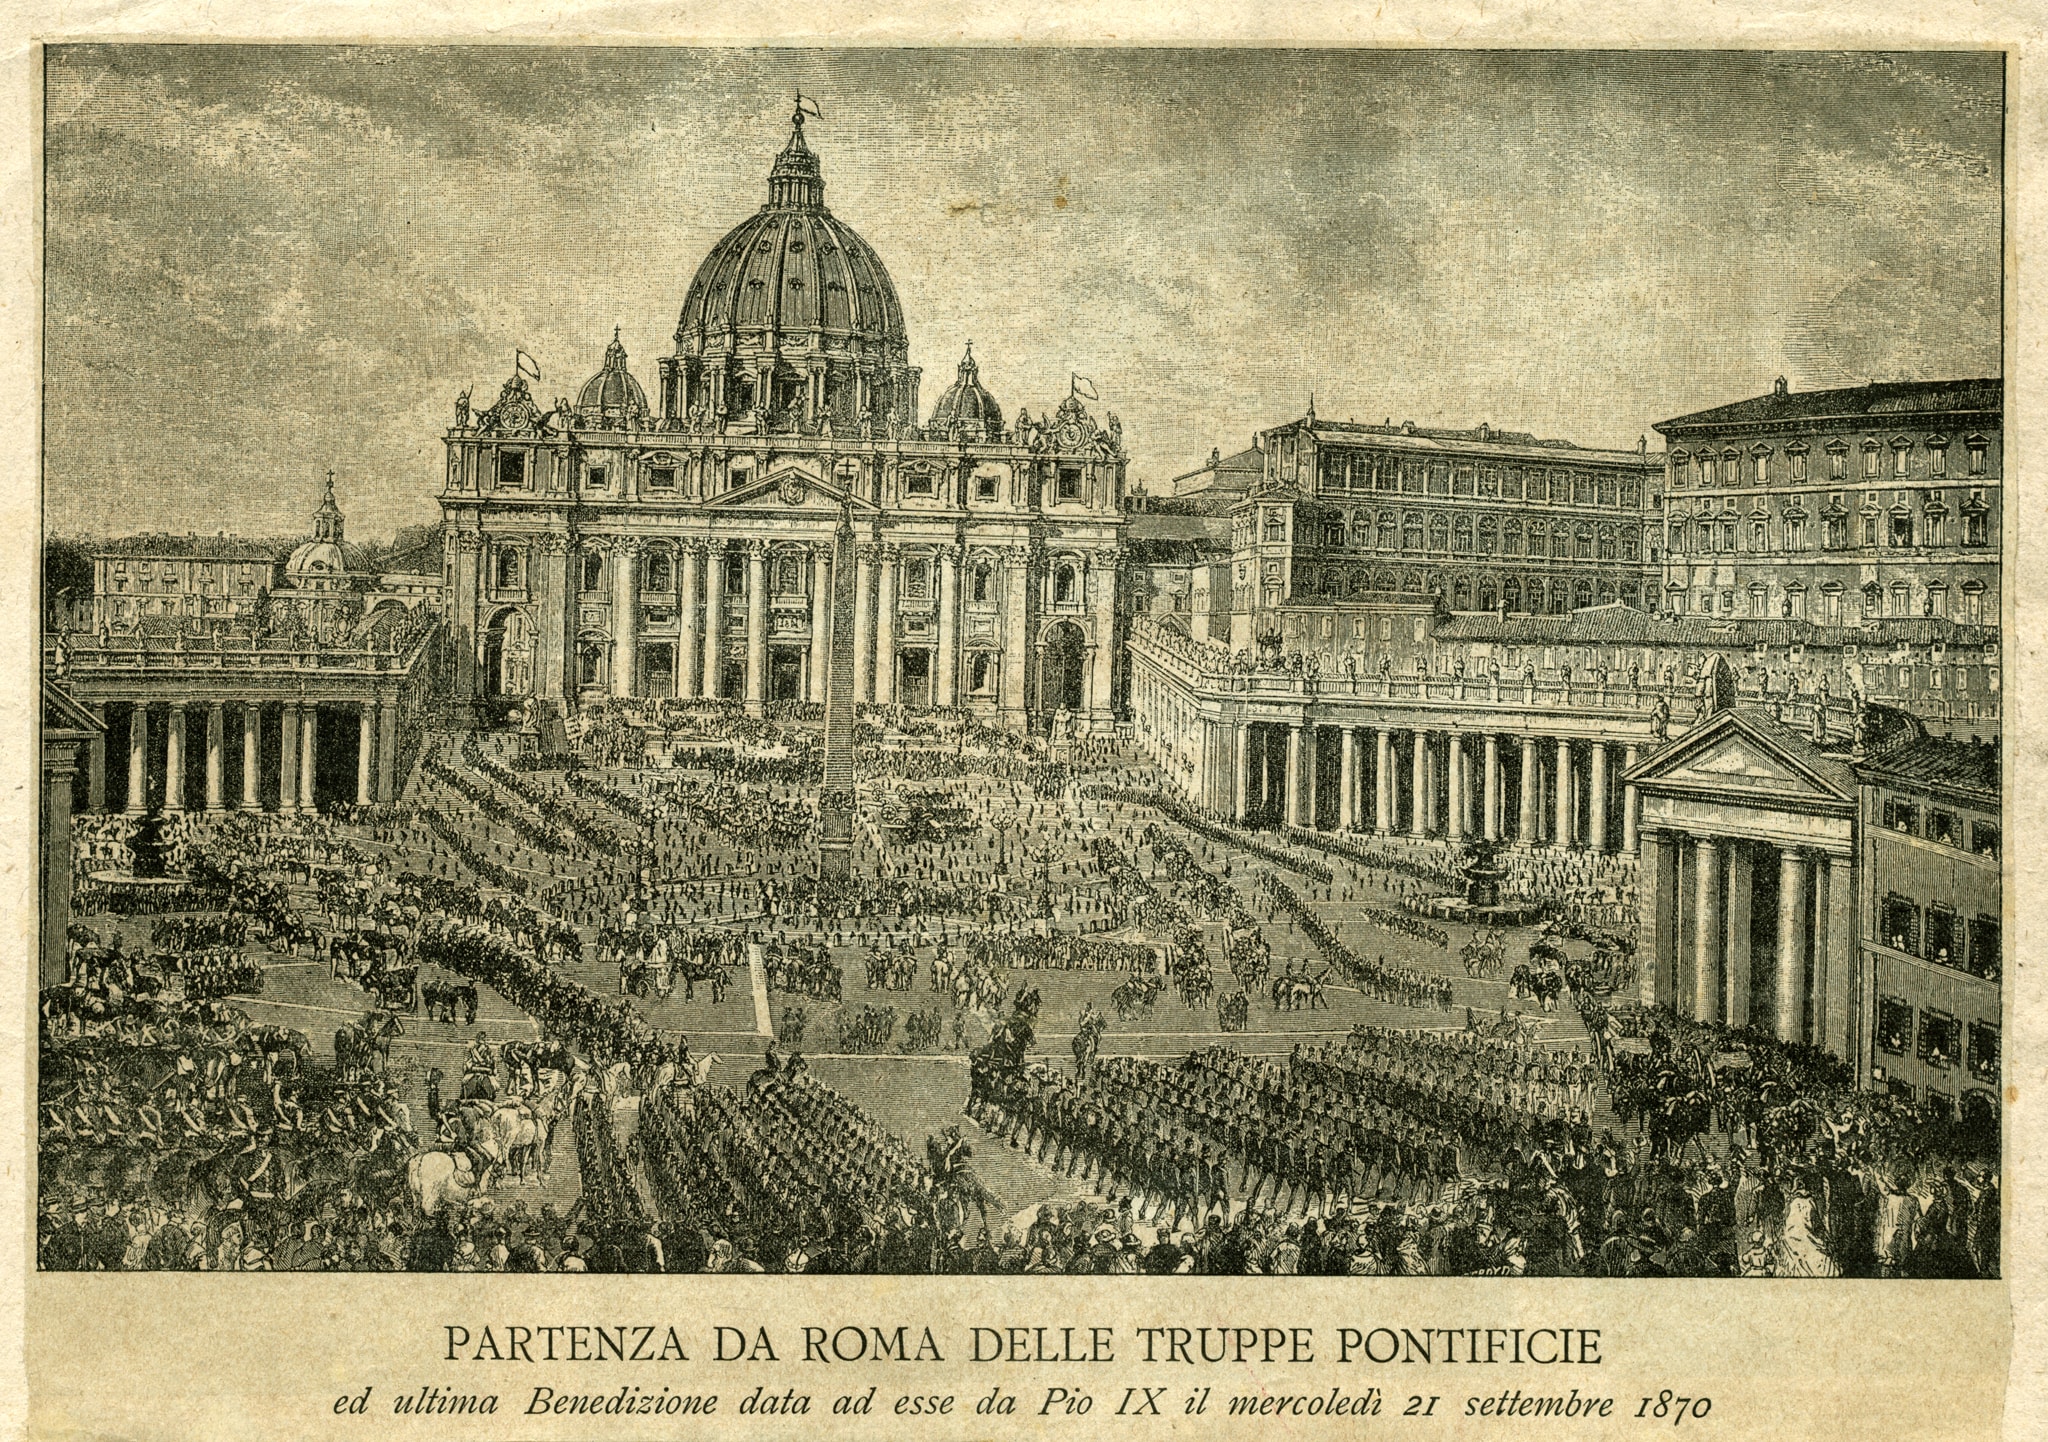 Incisione raffigurante la partenza delle truppe pontificie da Roma e l’ultima benedizione data loro da Pio IX il 21 settembre 1870